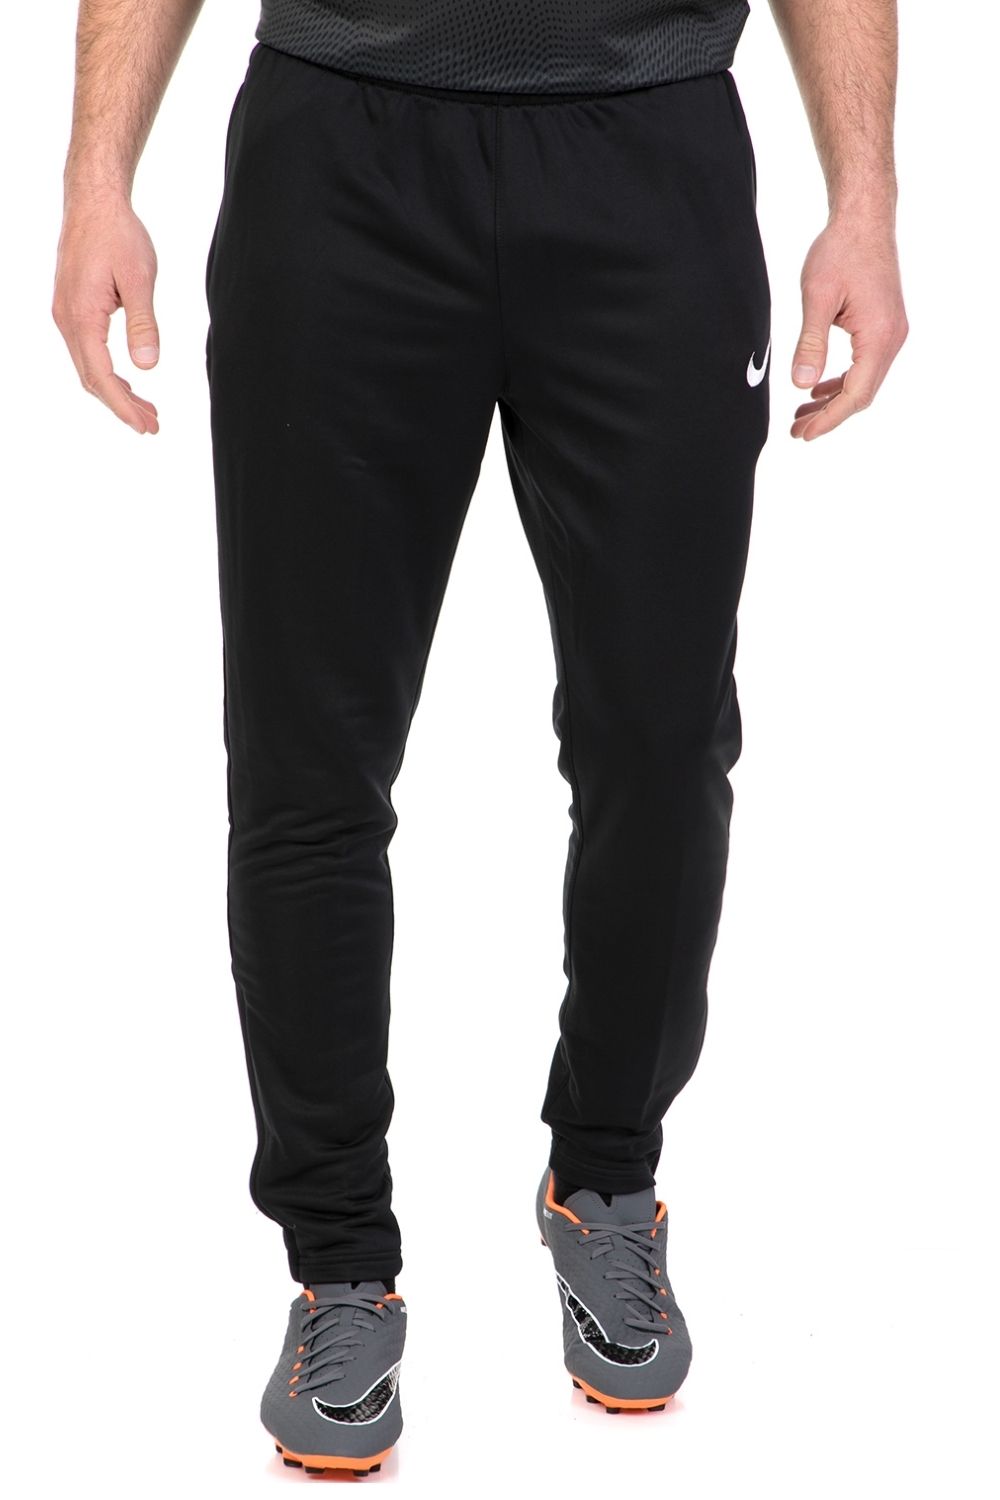 Ανδρικά/Ρούχα/Αθλητικά/Φόρμες NIKE - Ανδρικό παντελόνι φόρμας NIKE ACADEMY16 TECH μαύρο